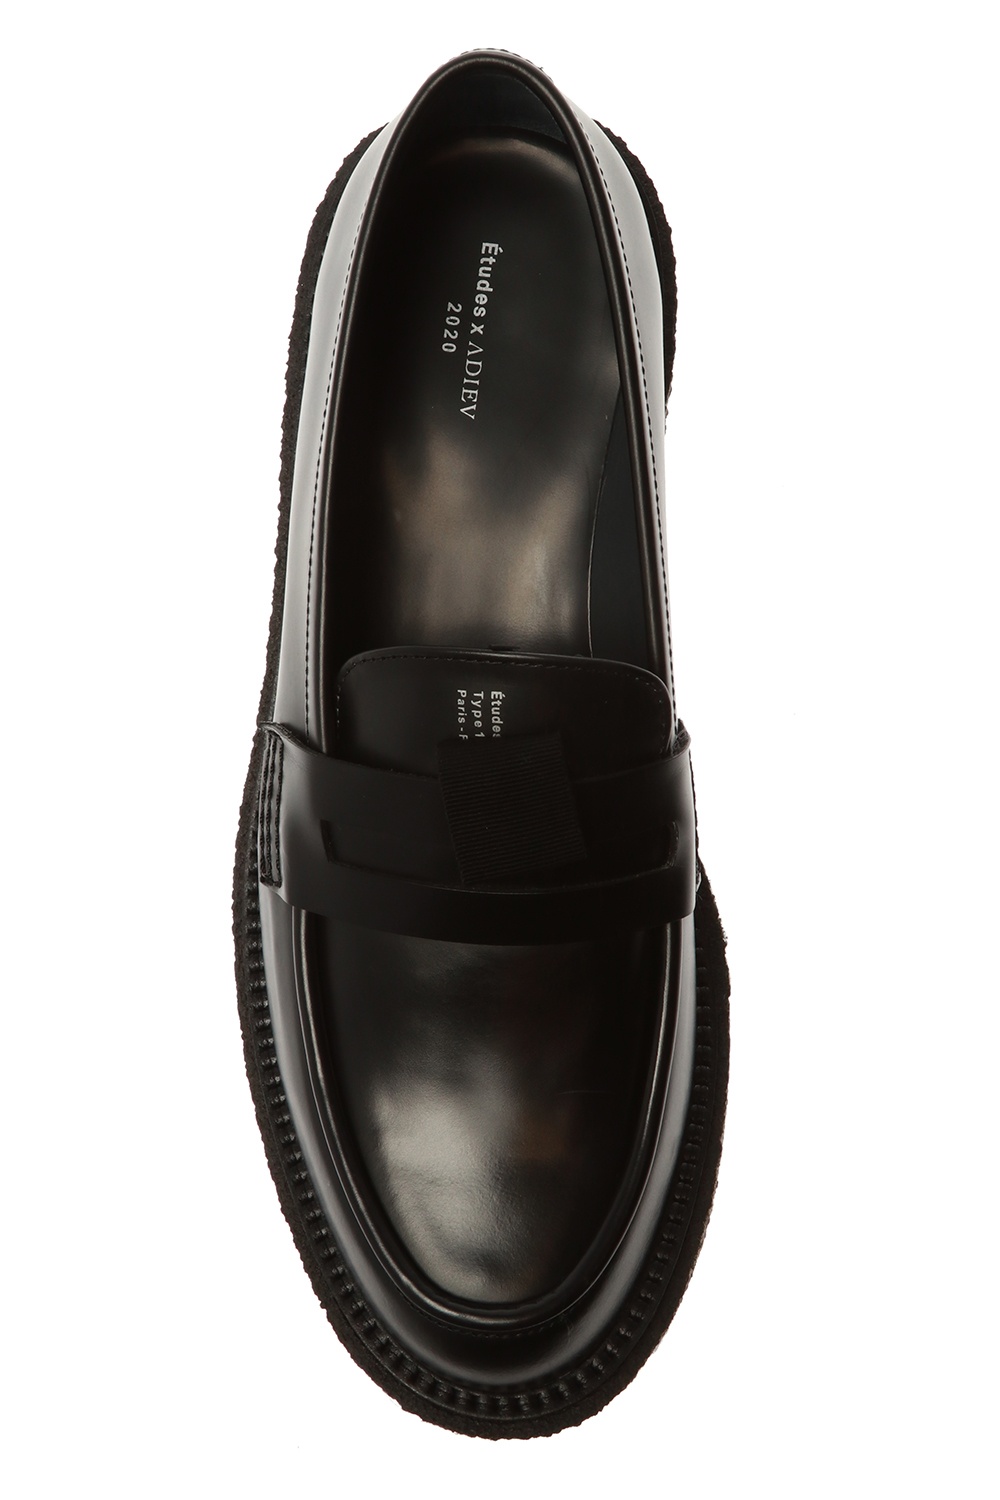 Adieu Paris ‘Type 143’ leather platform shoes